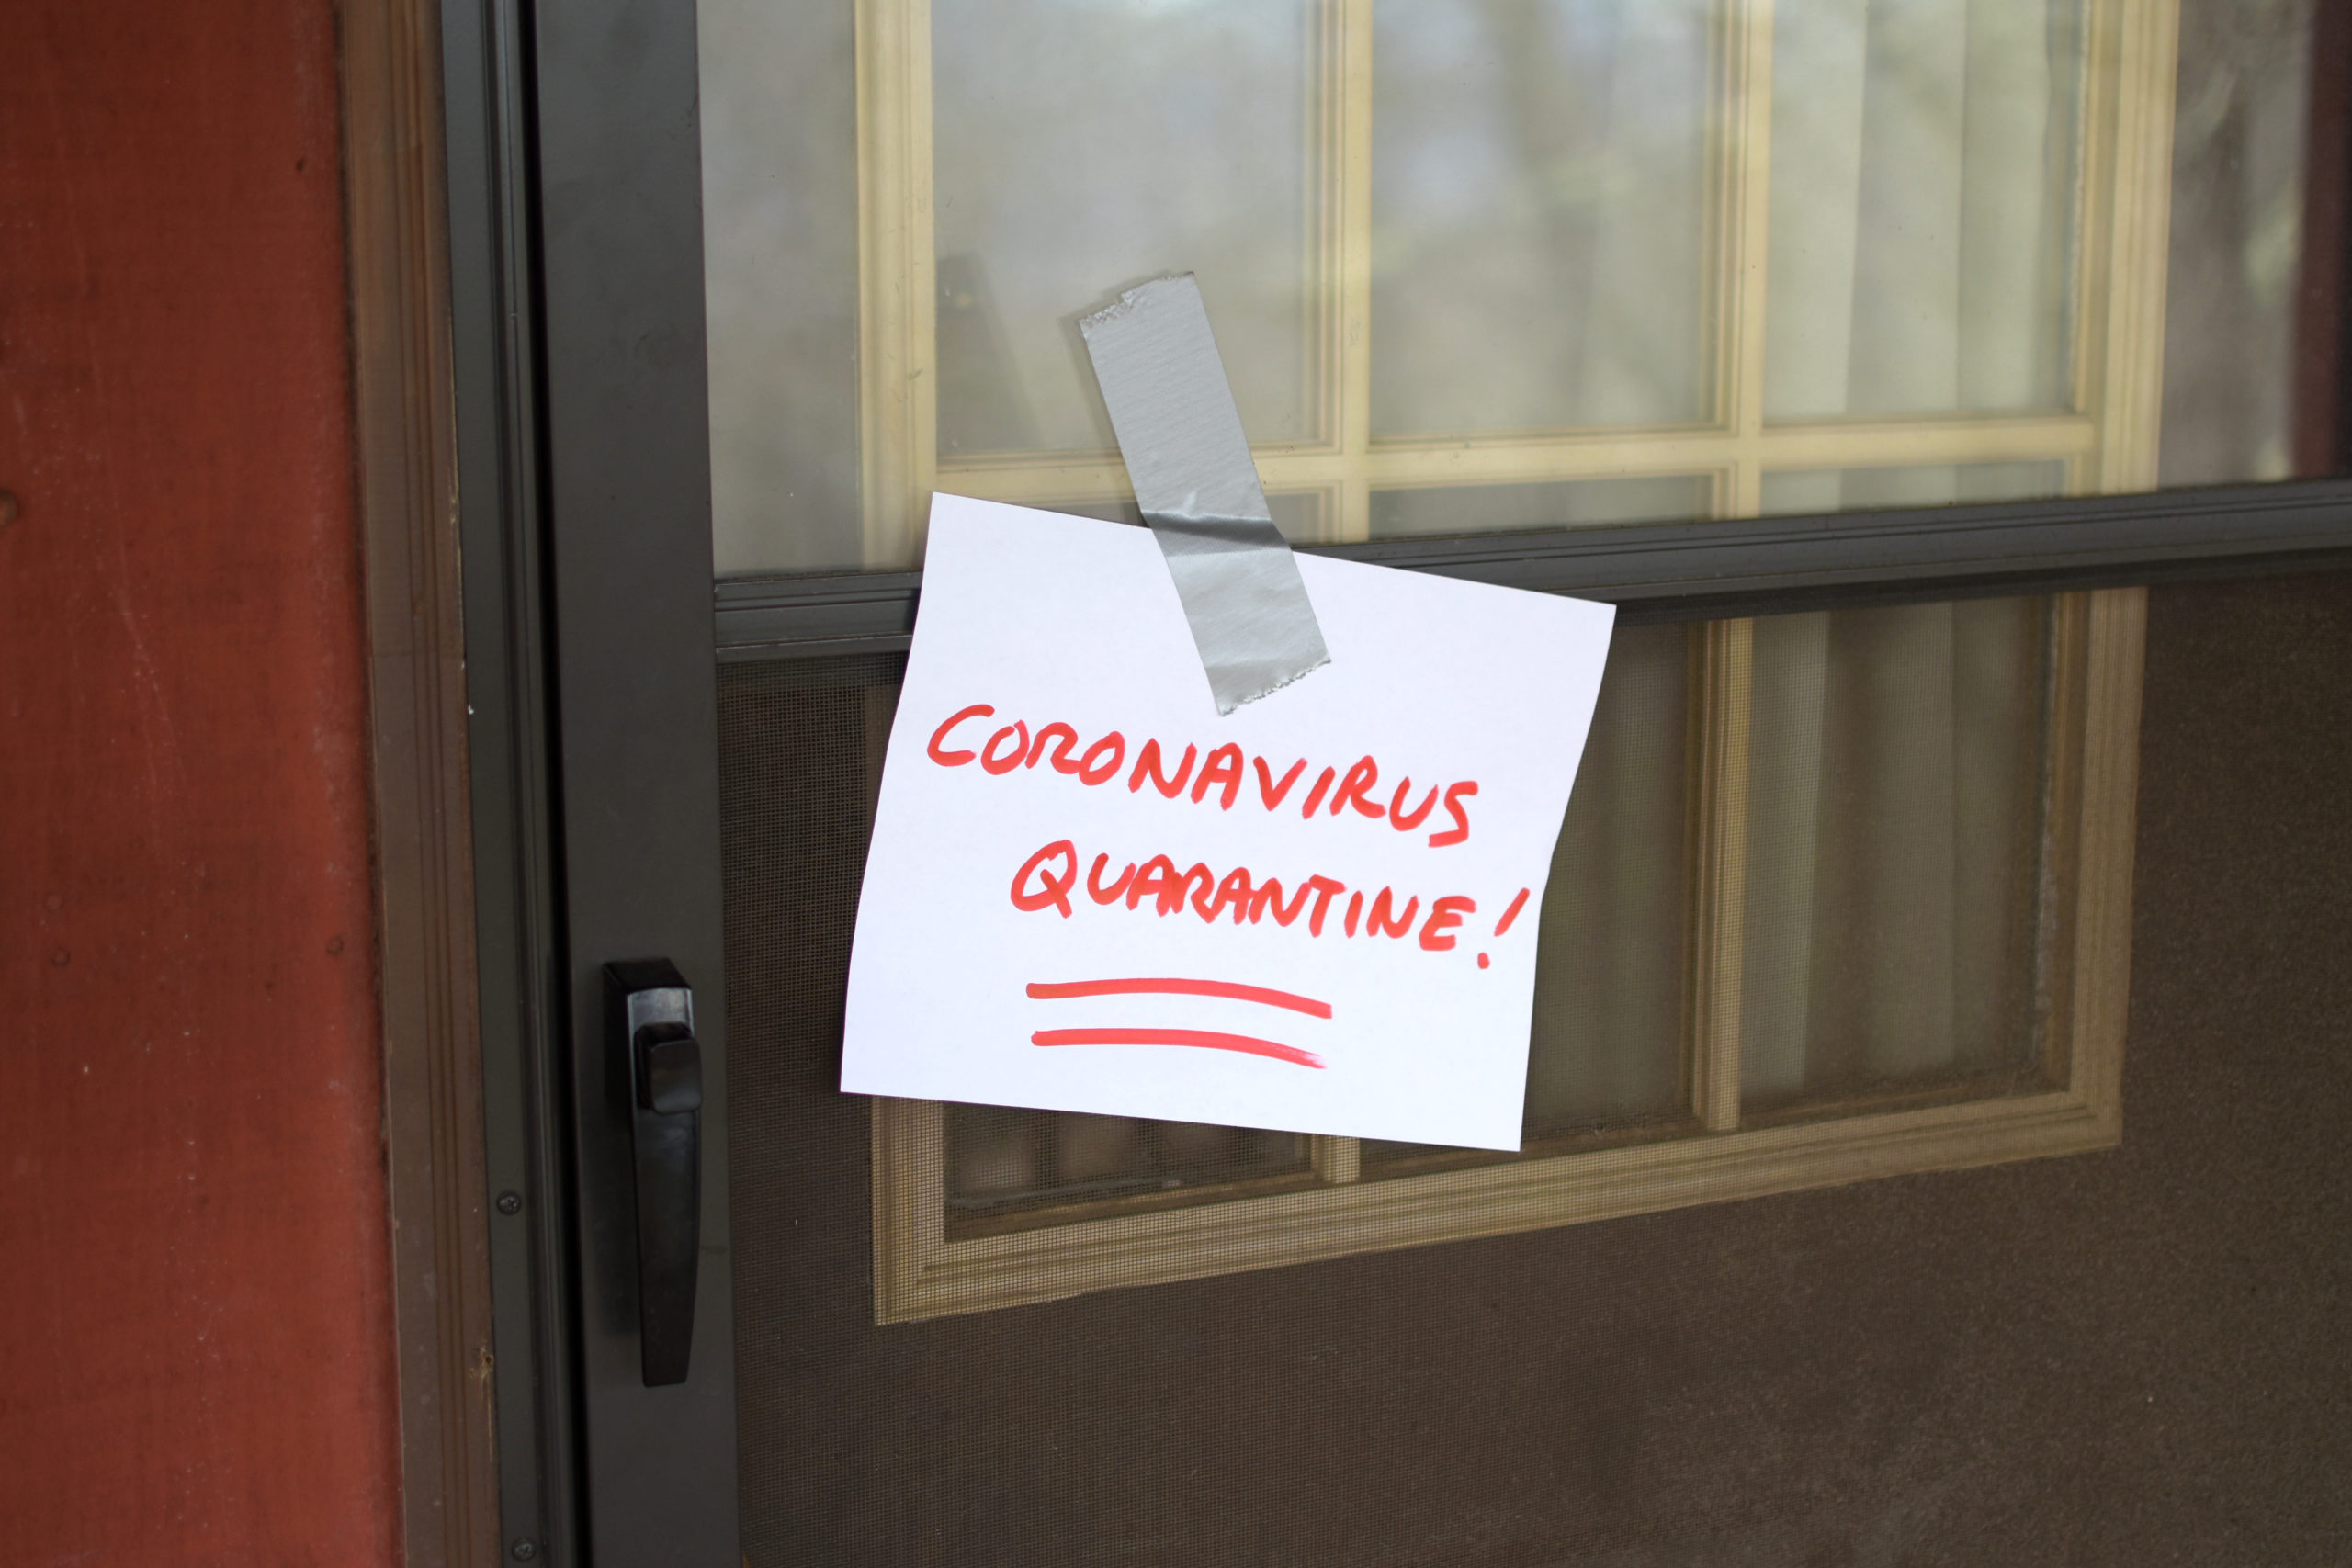 How To Self-Quarantine If Exposed To Coronavirus